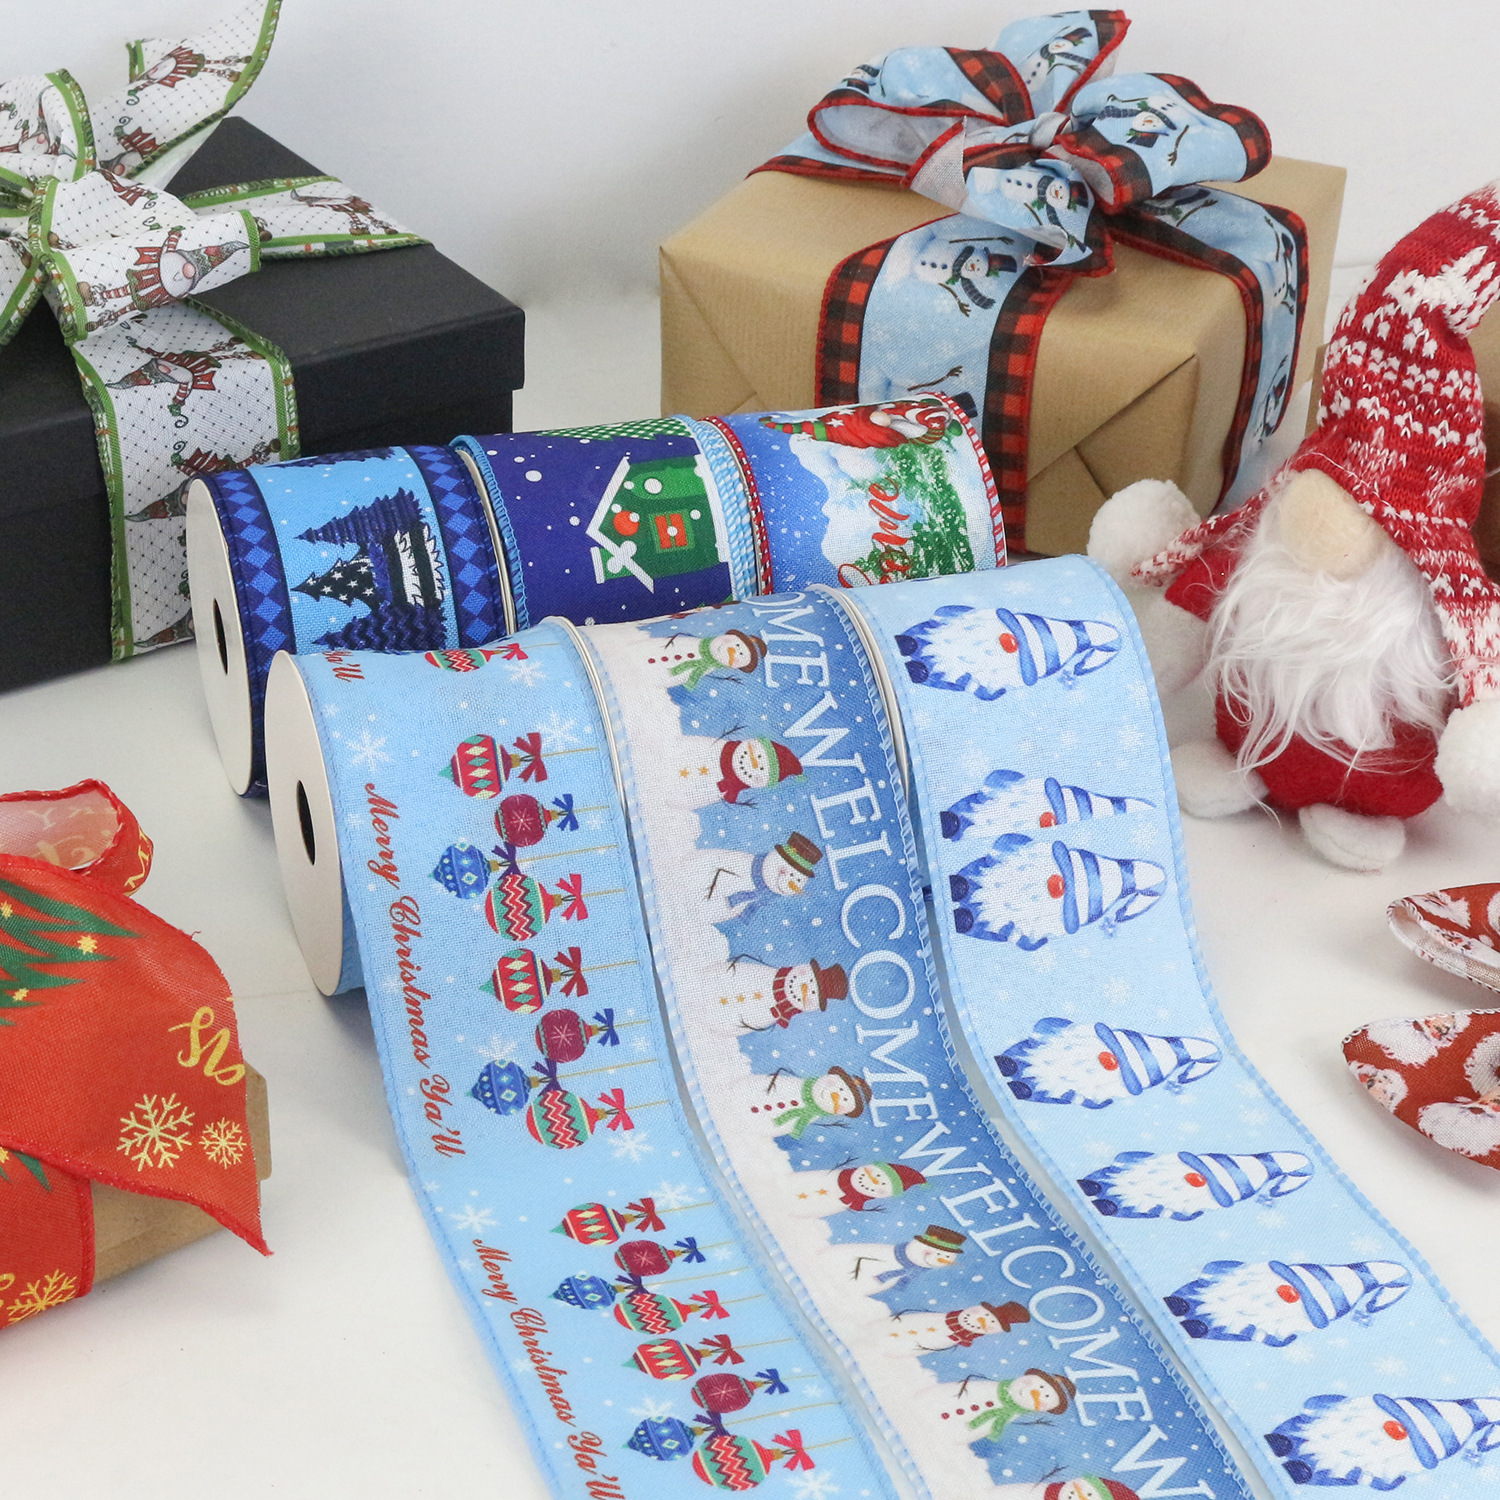 厂家定制丝带 圣诞节DIY材料圣诞节日装饰蝴蝶结织带铁丝边拷克带